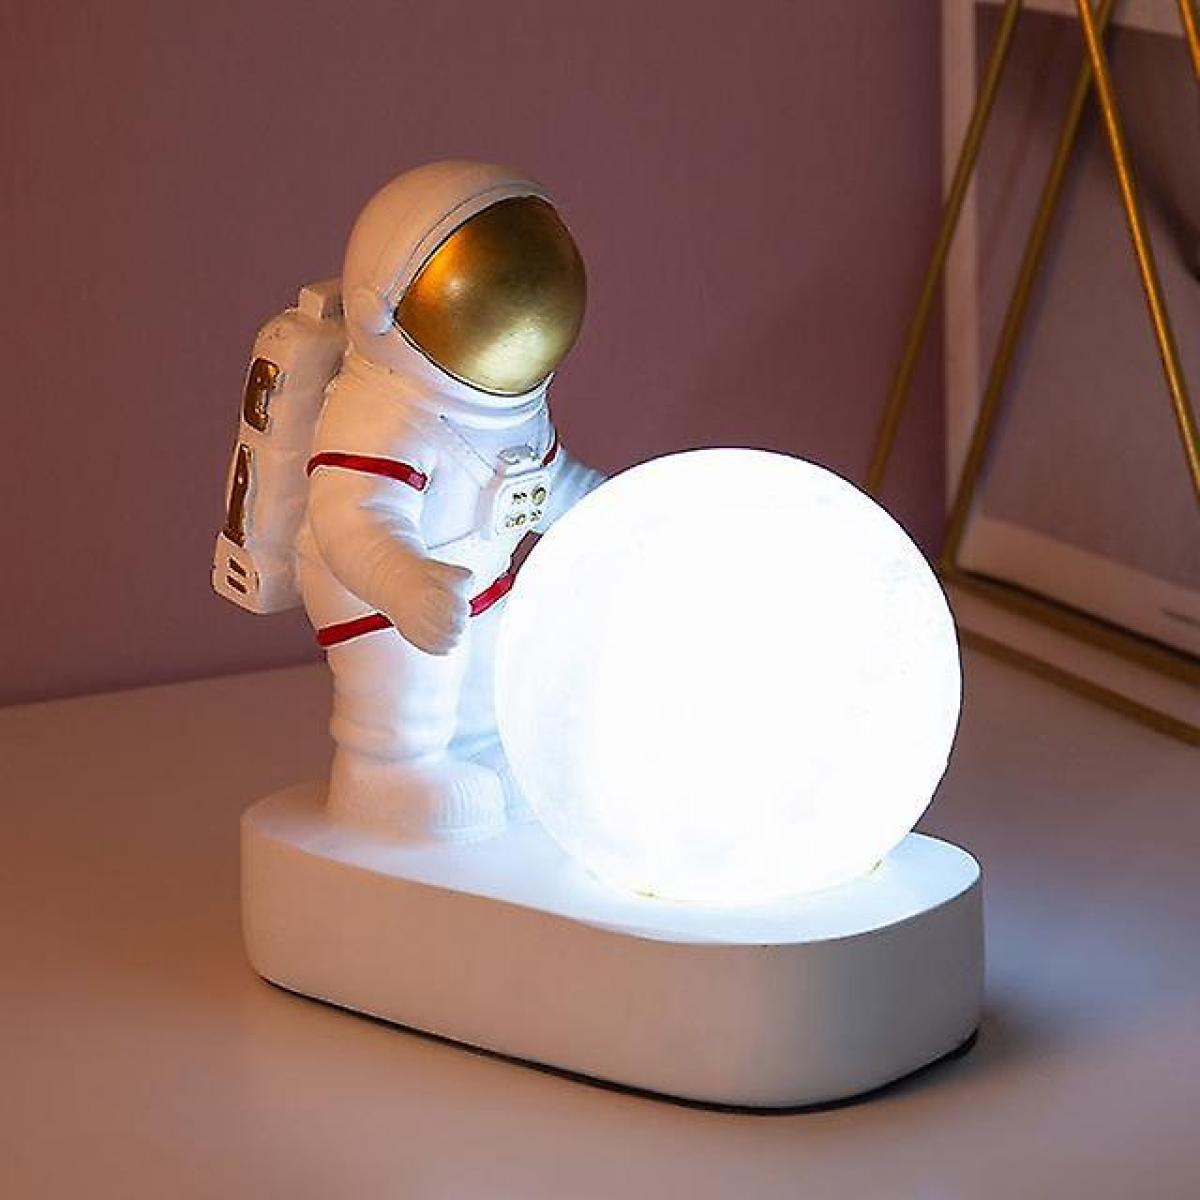 universal lampe de bureau moderne astronaute art deco table lumineuse en résine chambre idee salon grenier deco espace homme bureau lampe led (batterie or)  gold